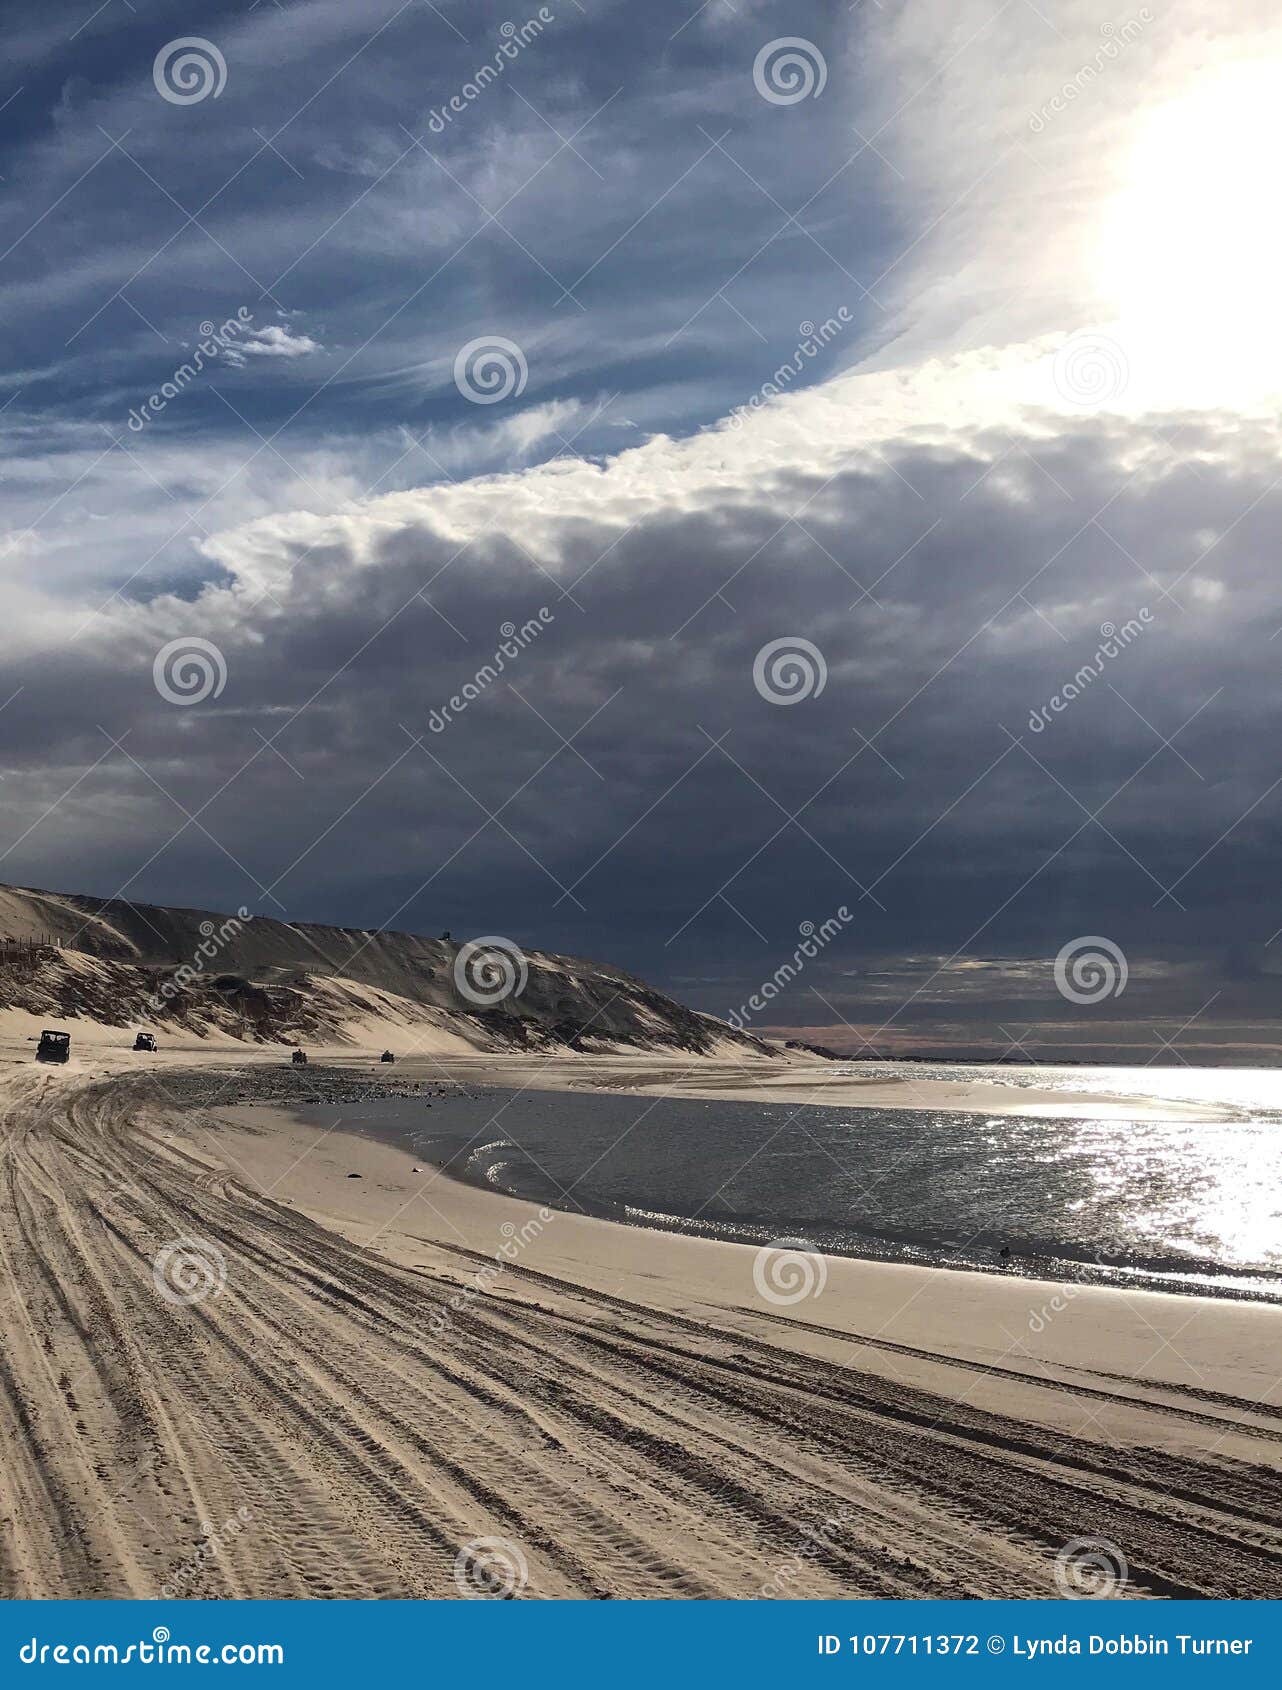 storm cloud brewing, shores of sea of cortez, el golfo de santa clara, mexico